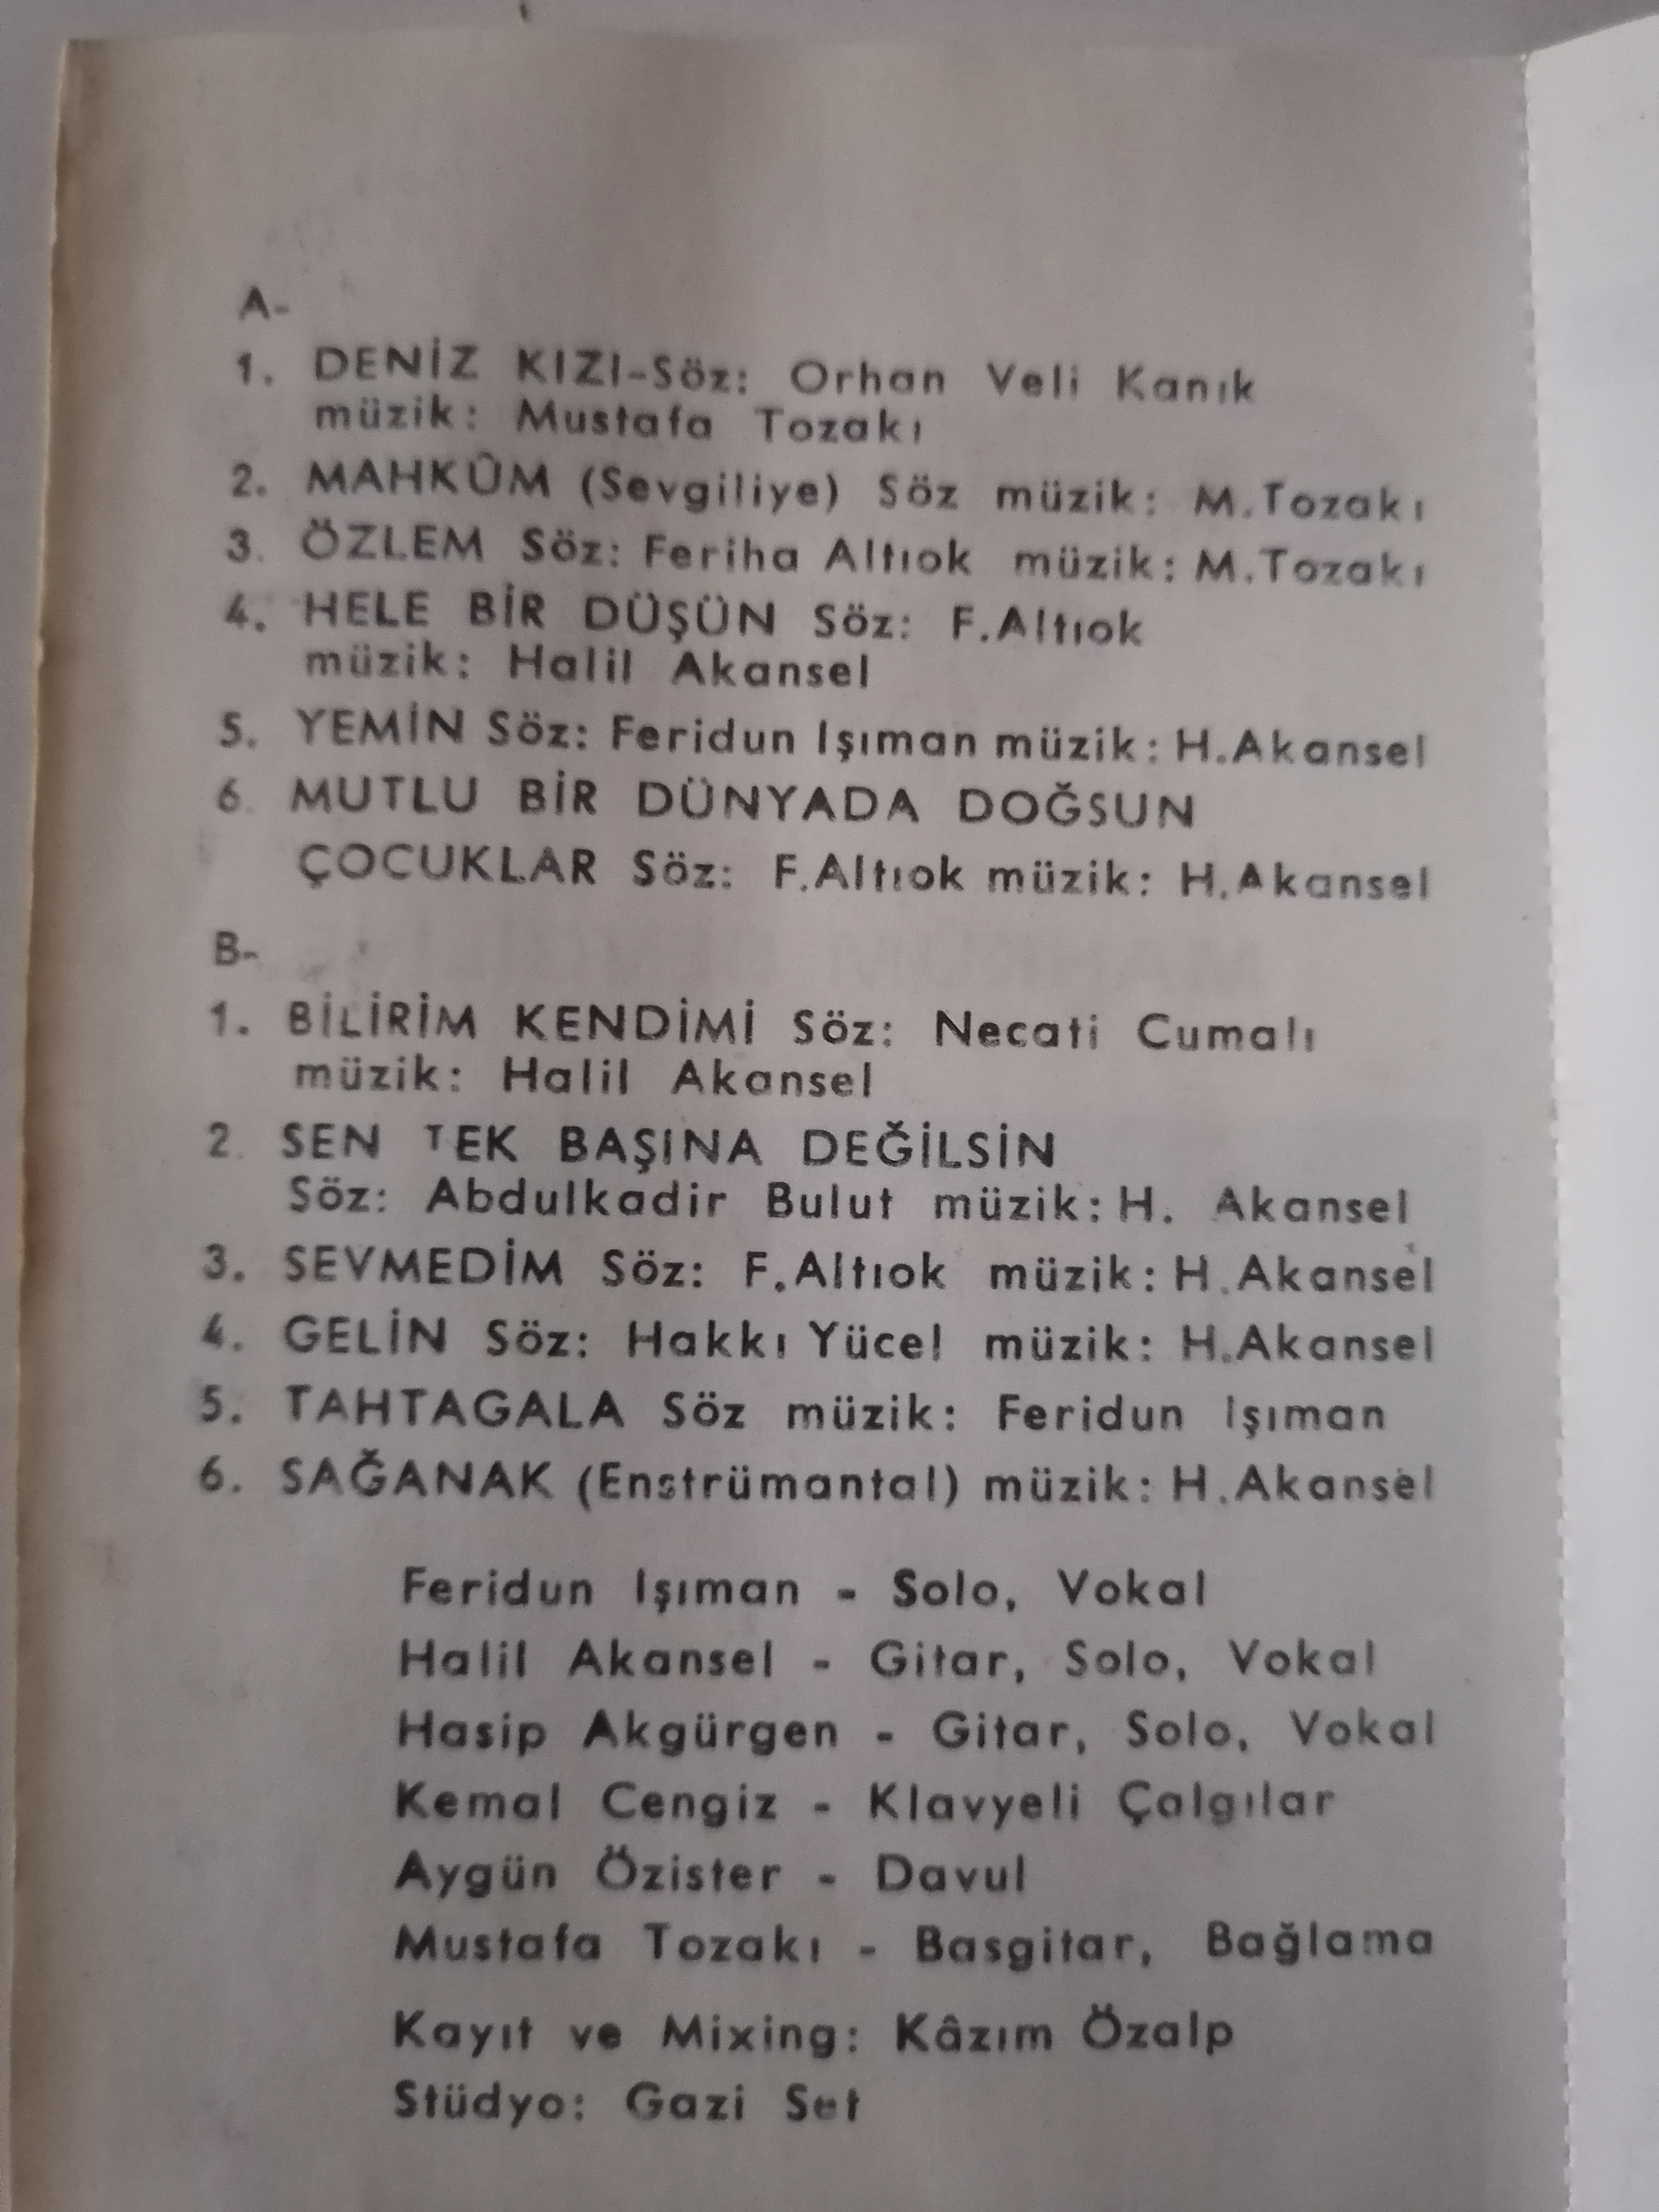 GÜZELYURT GELİŞİM - Mahkum Sevgiliye - 1988 Türkiye Basım Nadir Kaset Albüm